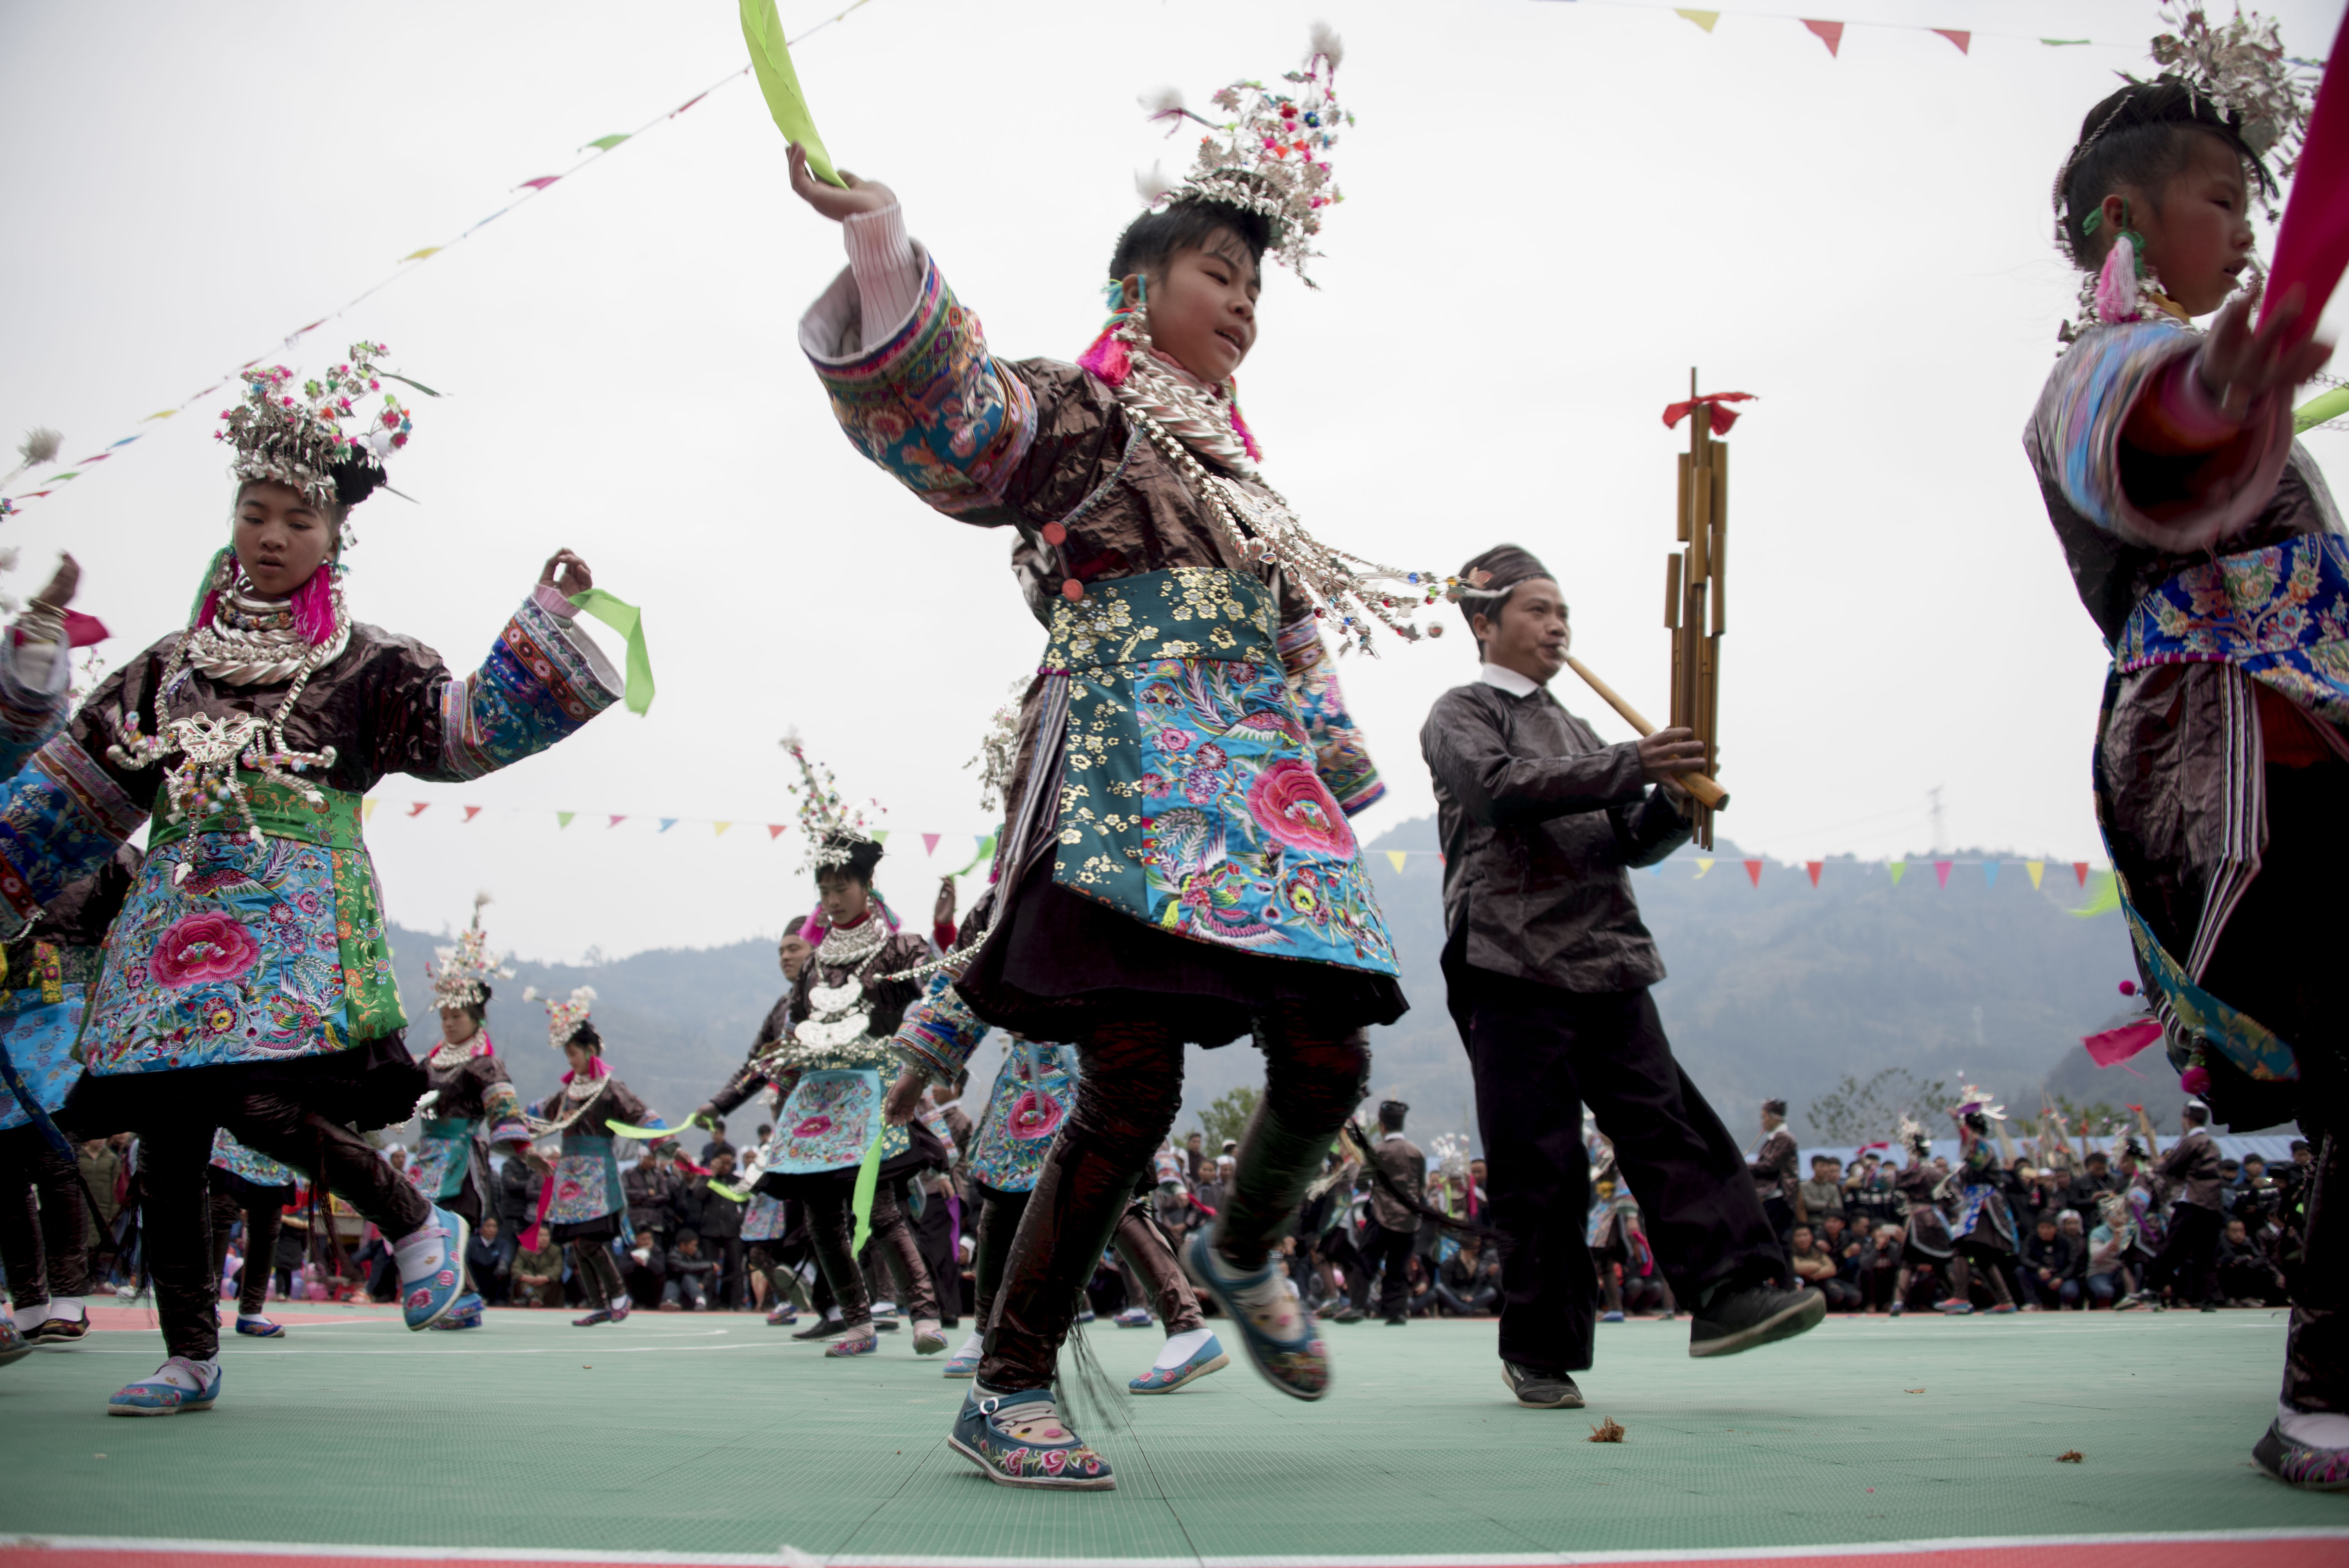 今年寒假期间,摆也村邀请传承人来到村里,给学生们传授苗族芦笙舞